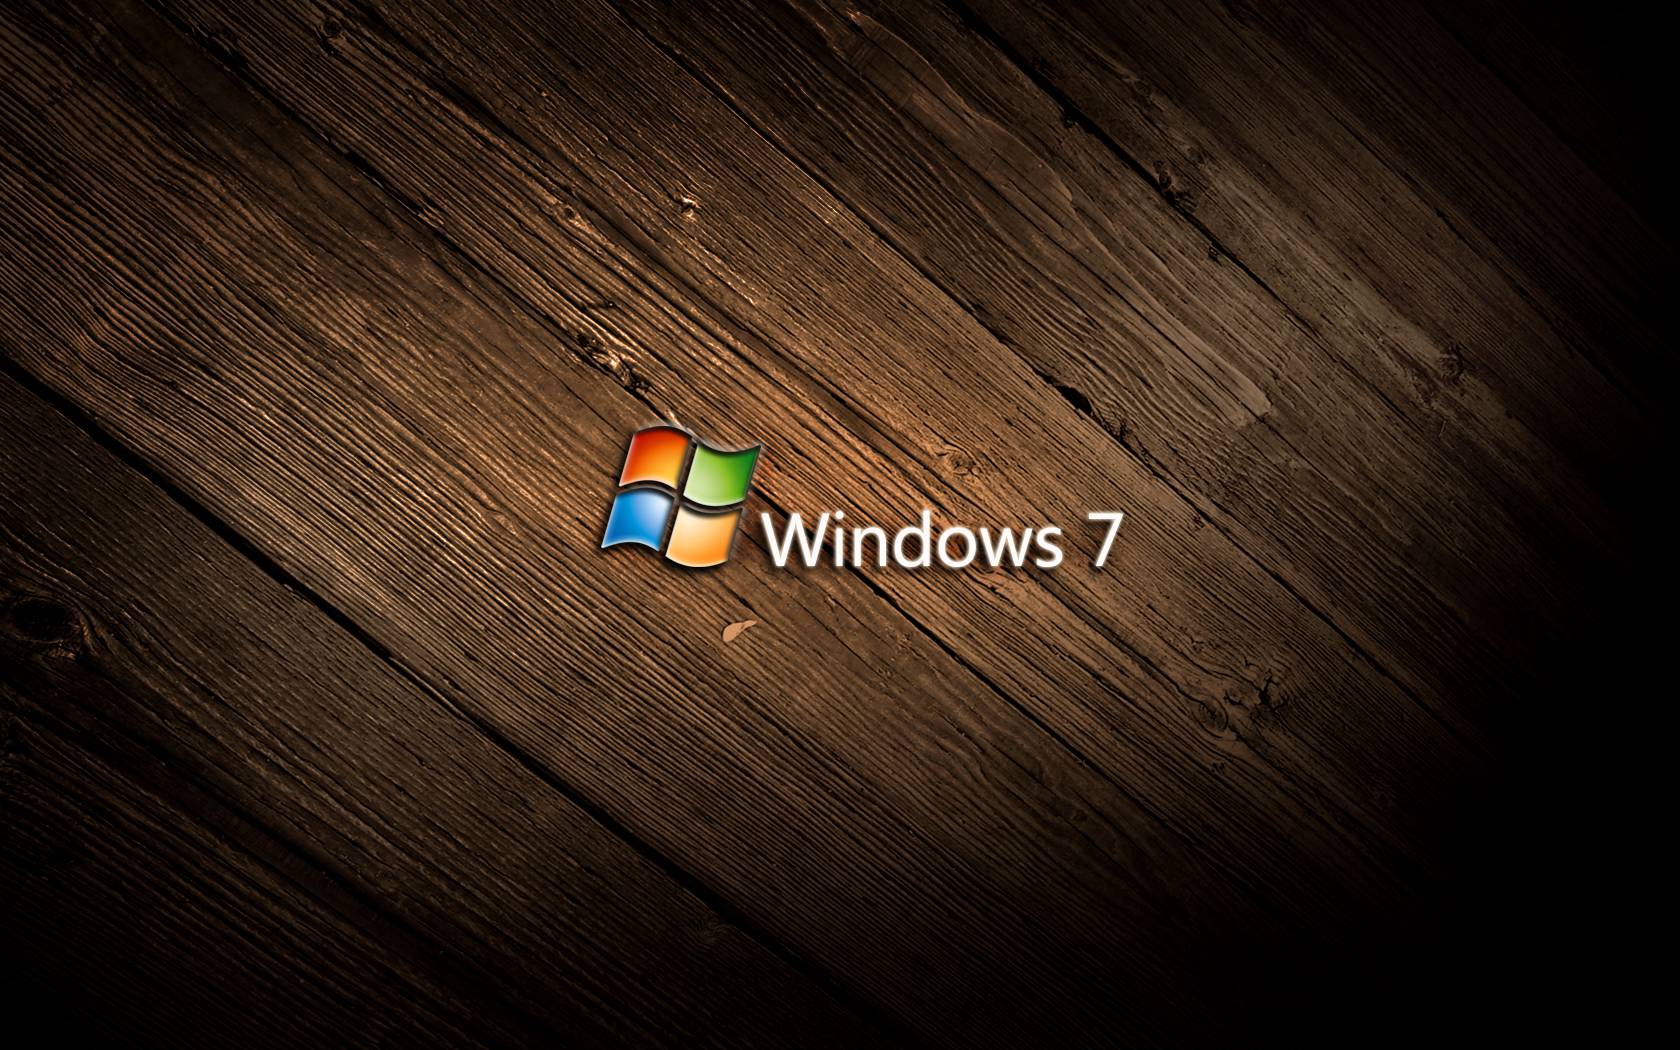 Tải miễn phí hình nền Windows 7 18 1680 X 1050 stmednet: Điểm nhấn cho màn hình máy tính của bạn là những bức hình nền đẹp và chất lượng. Với hình nền Windows 7 18 1680 X 1050 stmednet miễn phí, bạn sẽ có một bộ sưu tập hình ảnh độc đáo và phong phú để lựa chọn. Hãy tải về ngay để tận hưởng cảm giác mới mẻ!